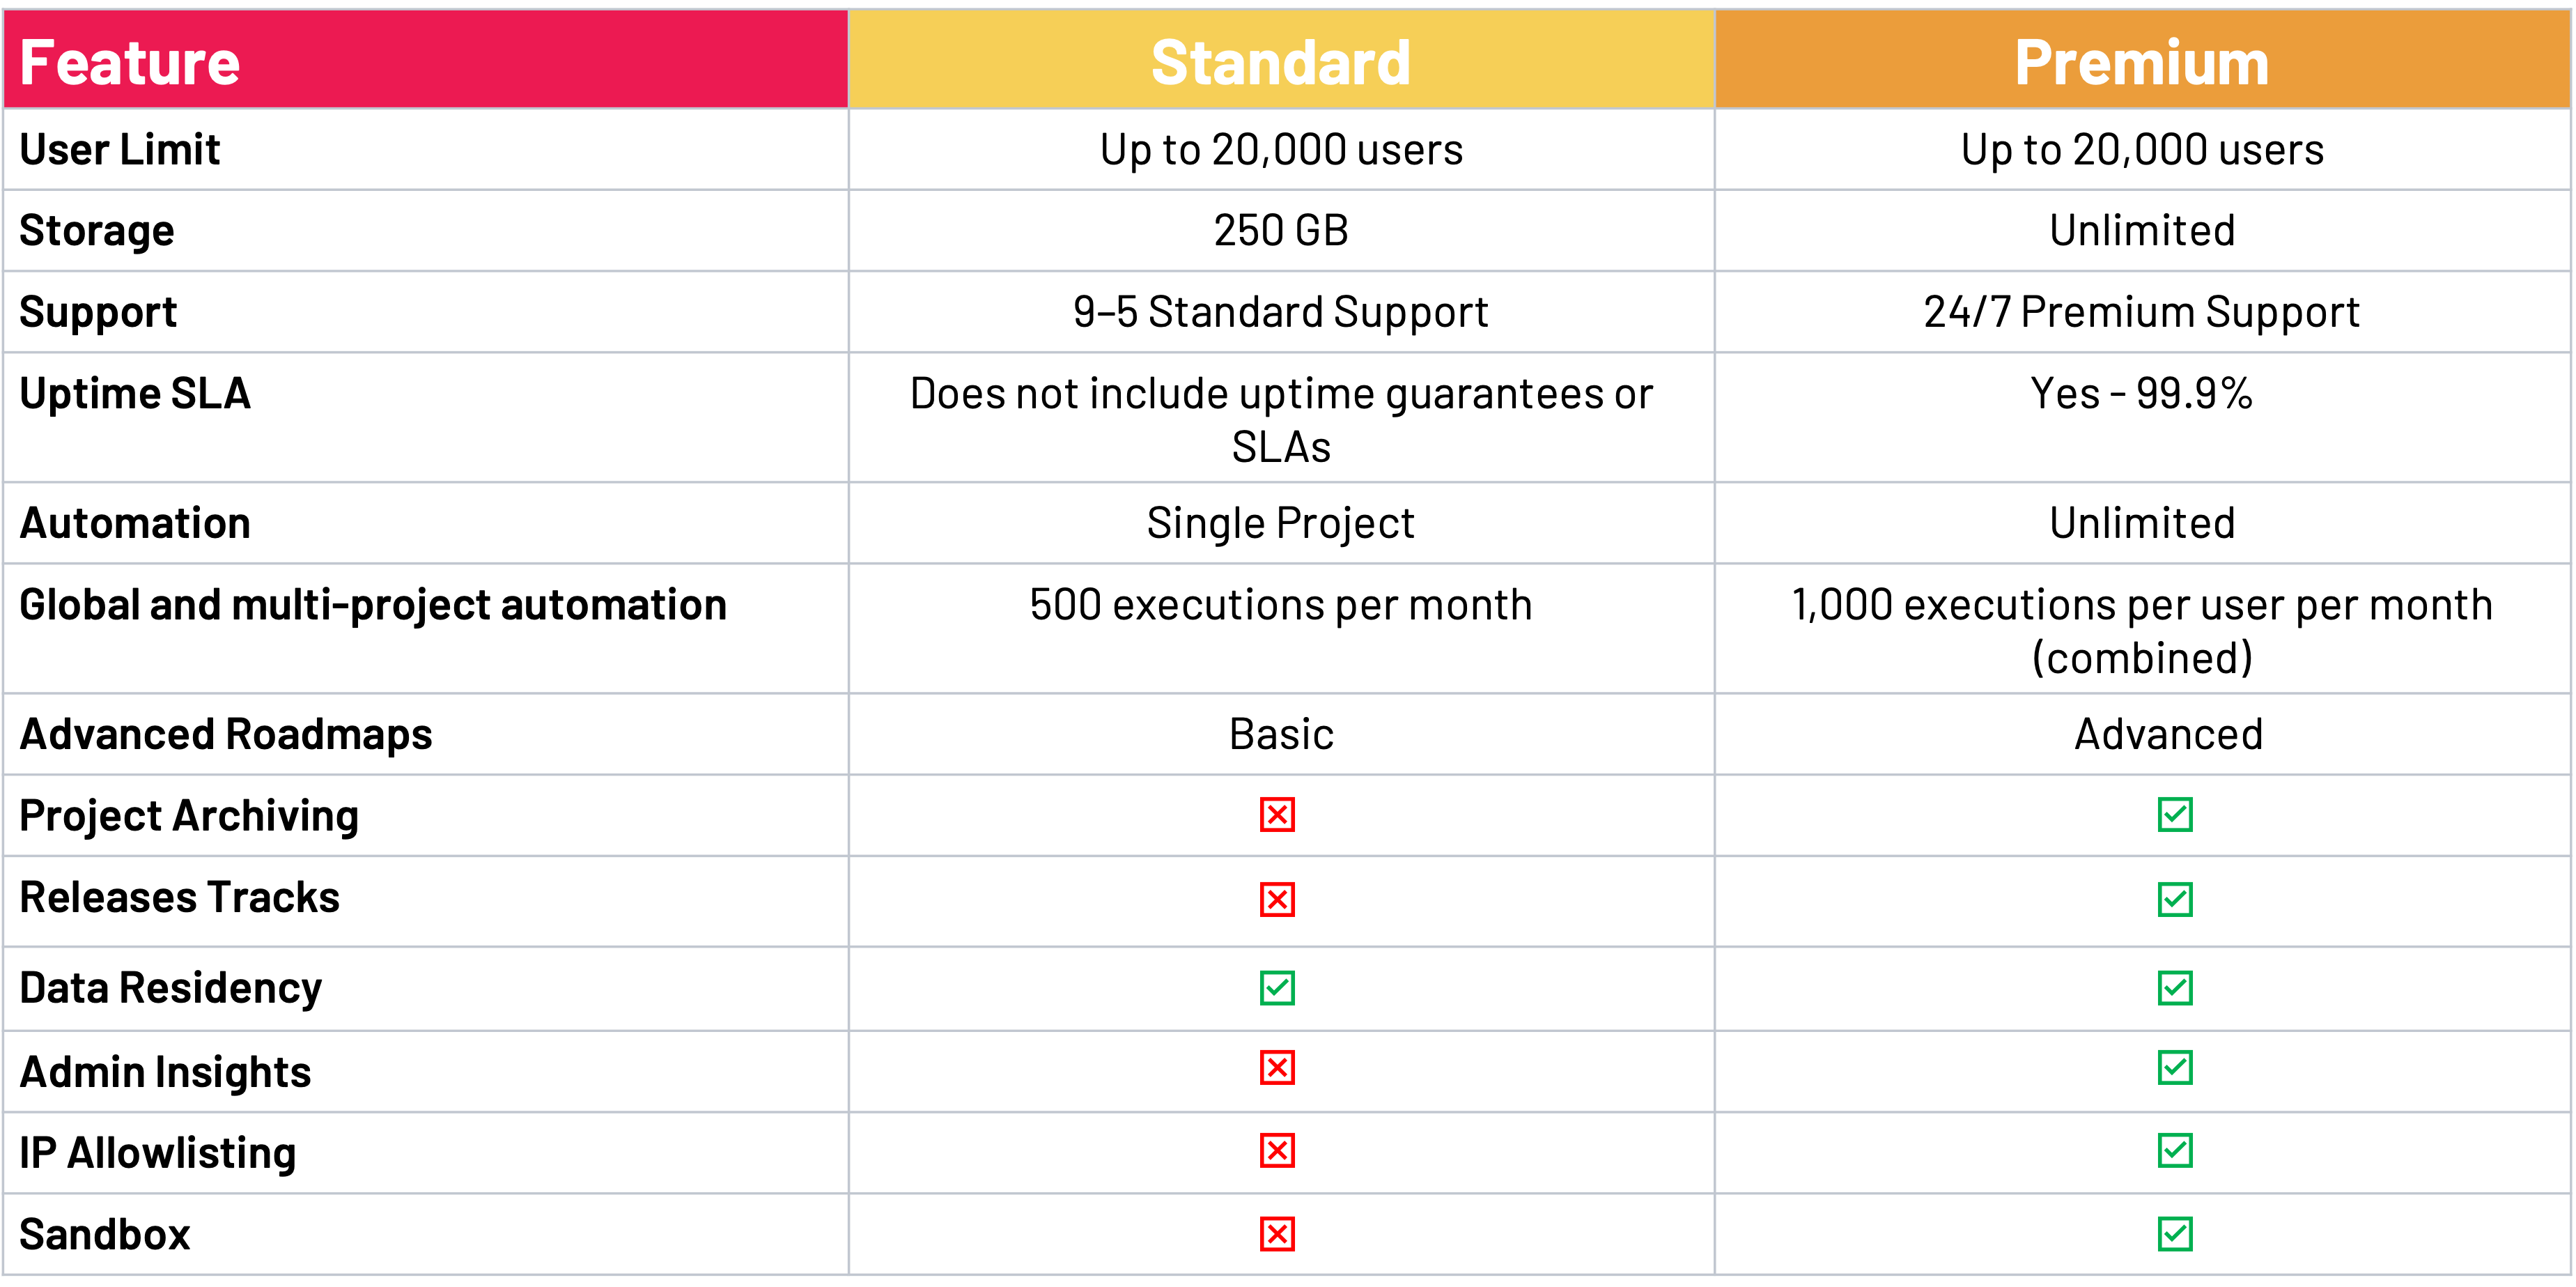 Standard vs Premium Comparison Table